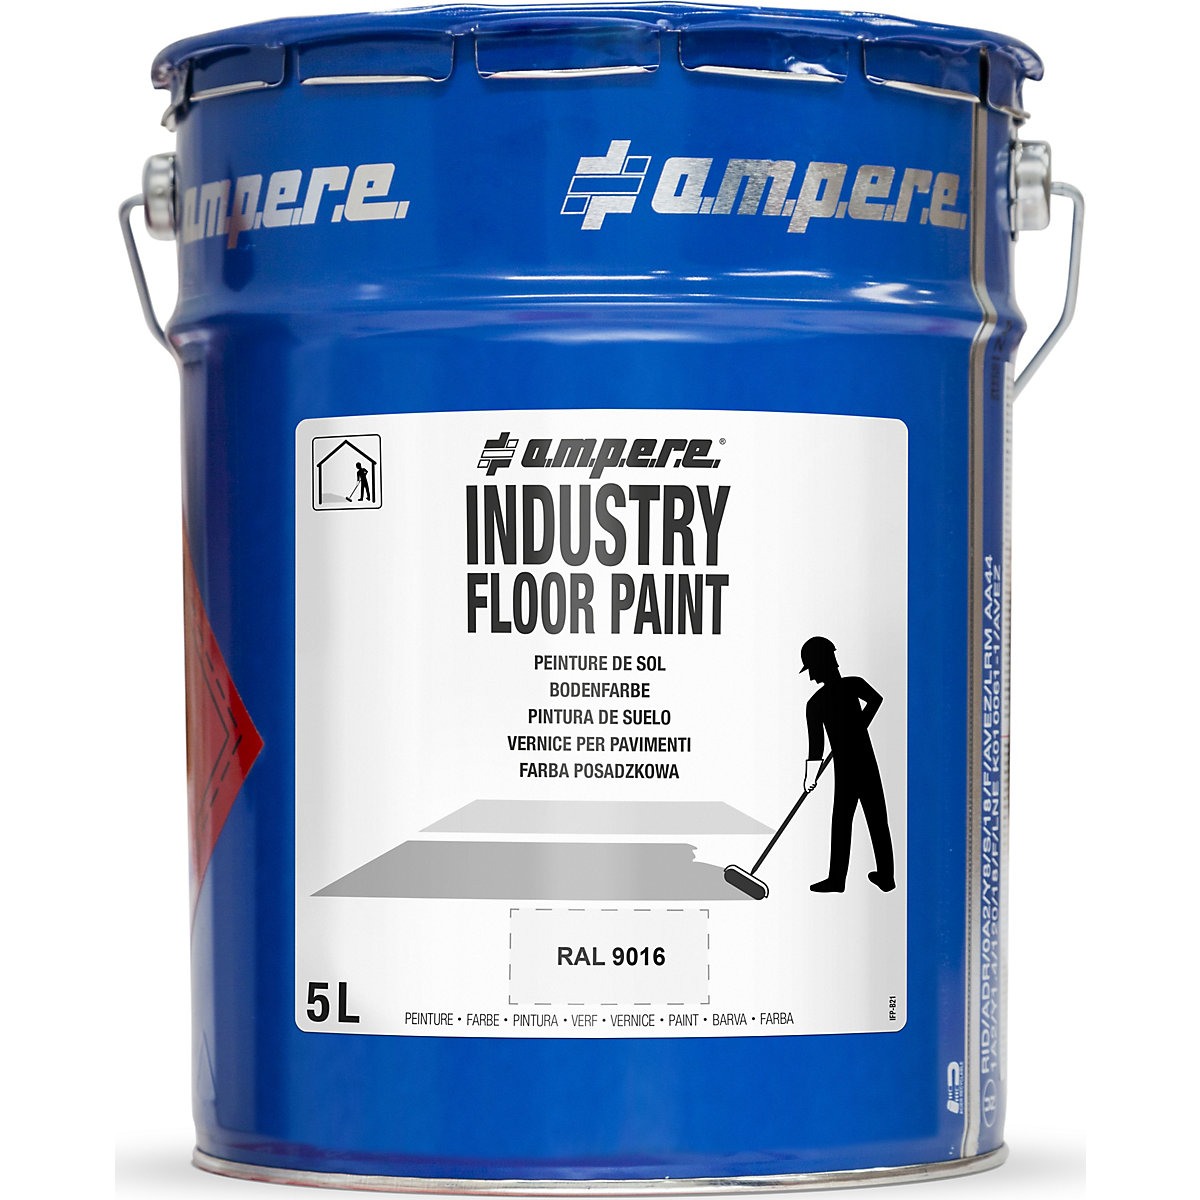 Peinture de marquage des sols Industry Floor Paint® – a.m.p.e.r.e, contenu 5 l, blanc